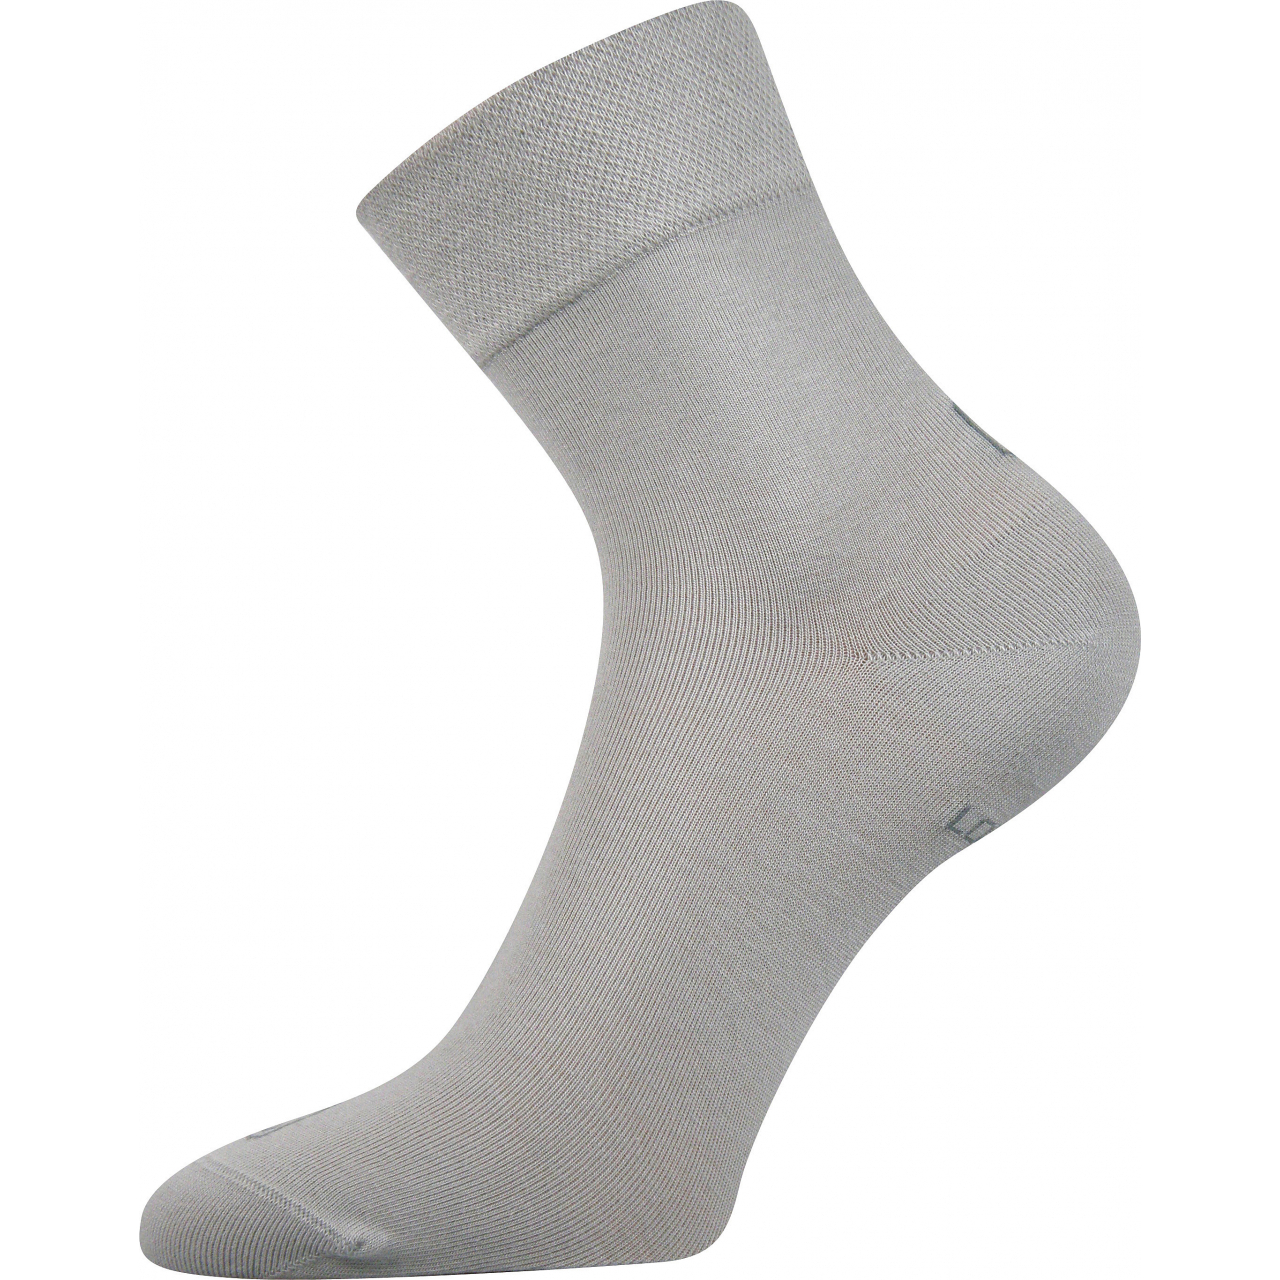 Ponožky dámské Lonka Fanera - světle šedé, 35-38